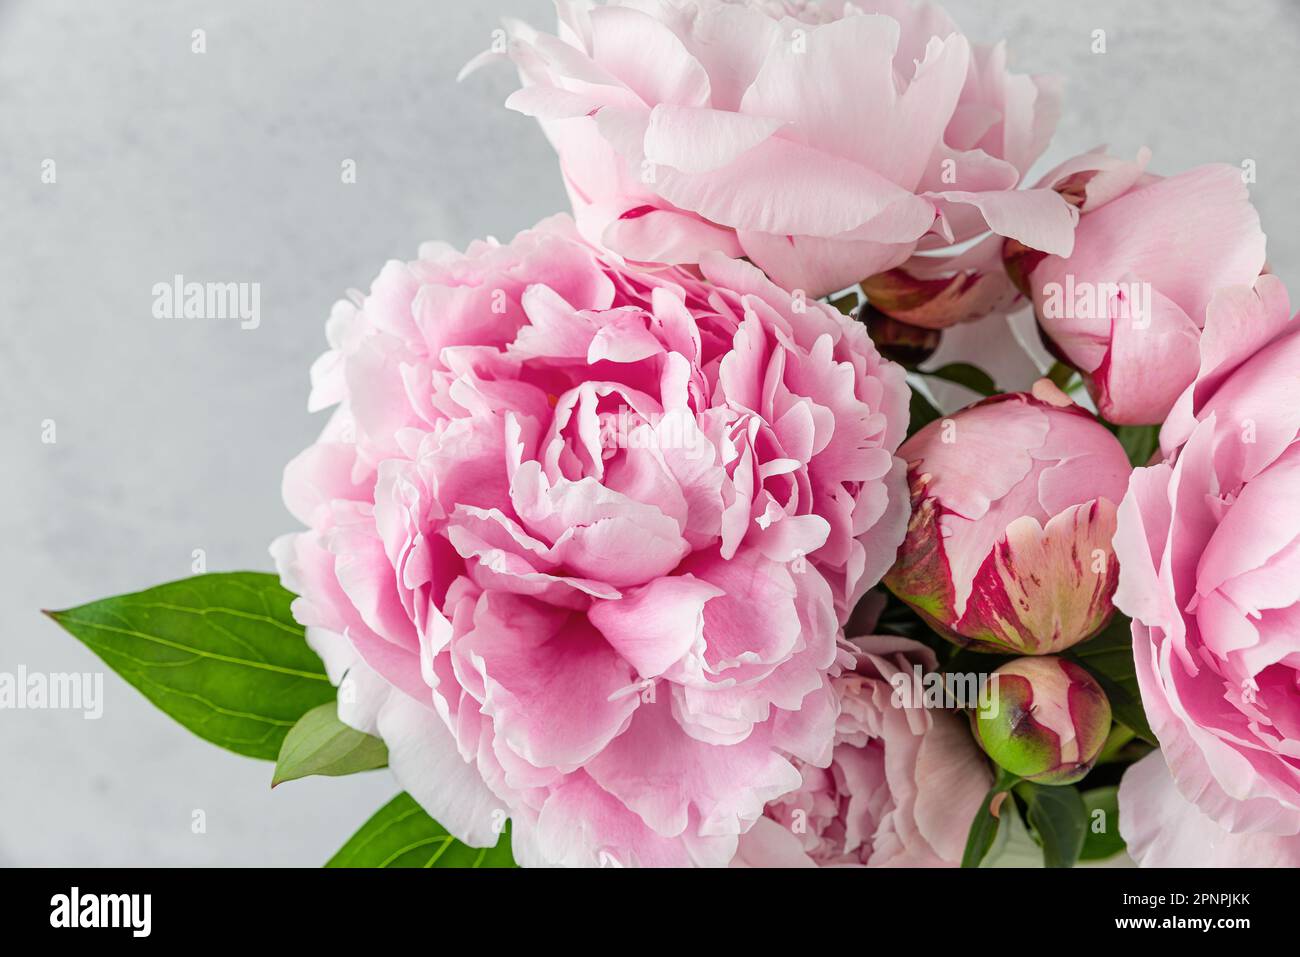 Gros plan de fleurs de pivoine rose pastel sur fond blanc. Carte de mariage ou de fête des mères. Prise de vue macro. Texture de la nature des fêtes Banque D'Images